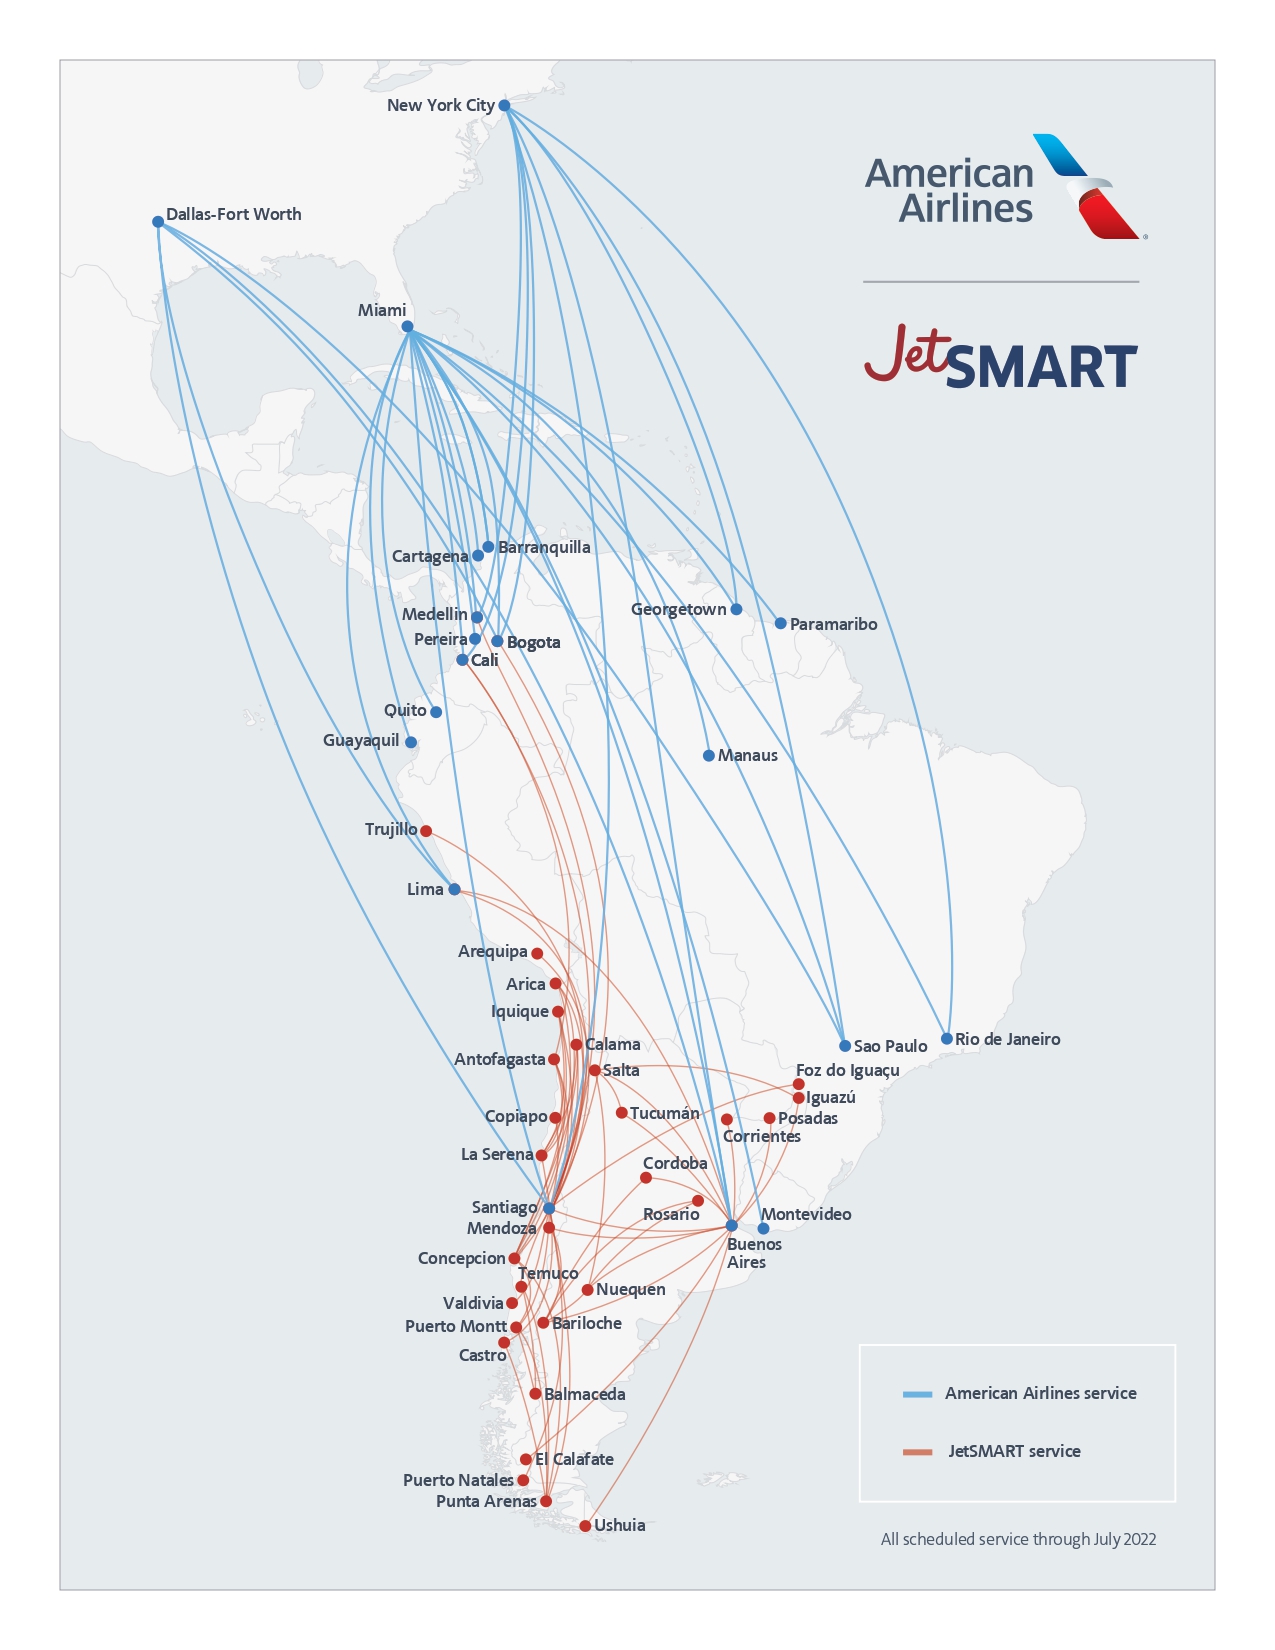 Mapa de las rutas de American Airlines y JetSmart que ahora estarán fusionadas